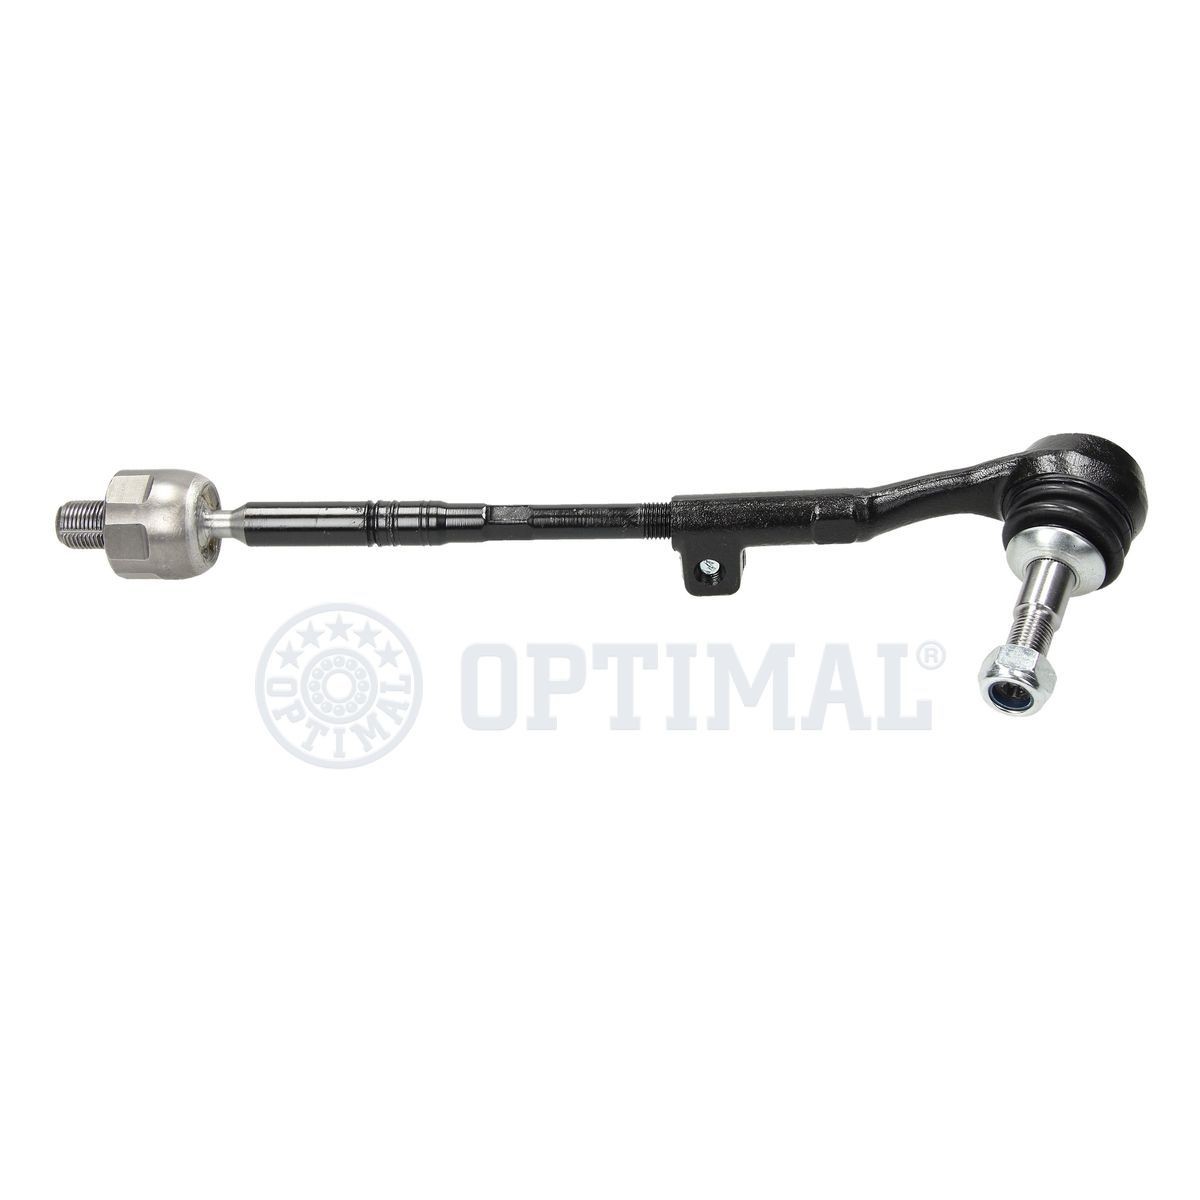 OPTIMAL Steering bar G0-748